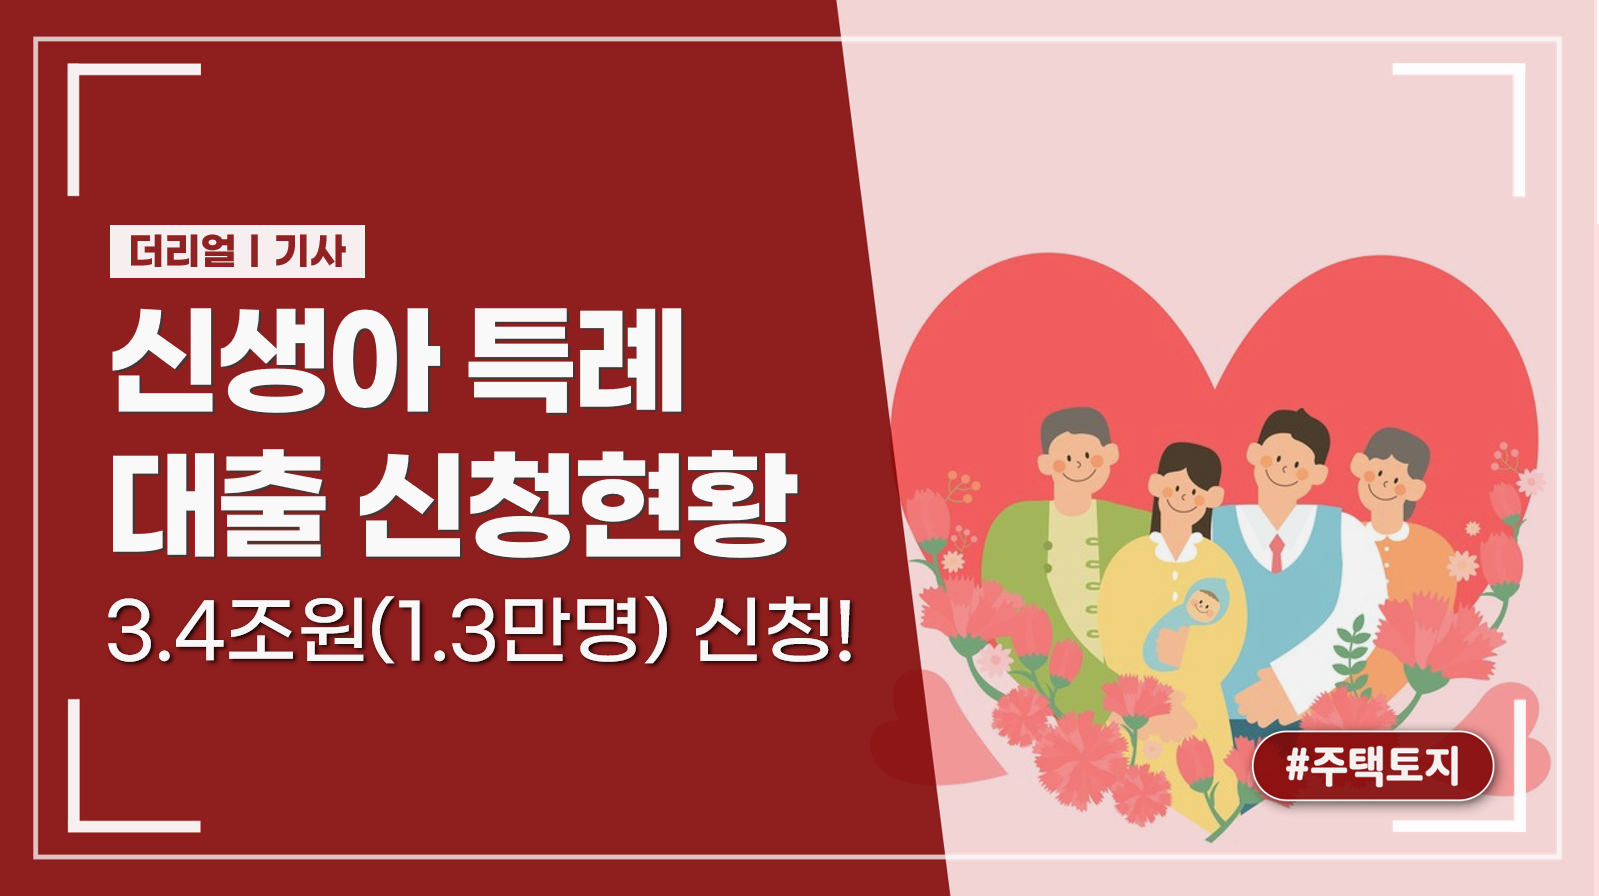 신생아 특례 대출 신청현황(1.29~2.16)_ft.3.4조원(1.3만명) 신청!